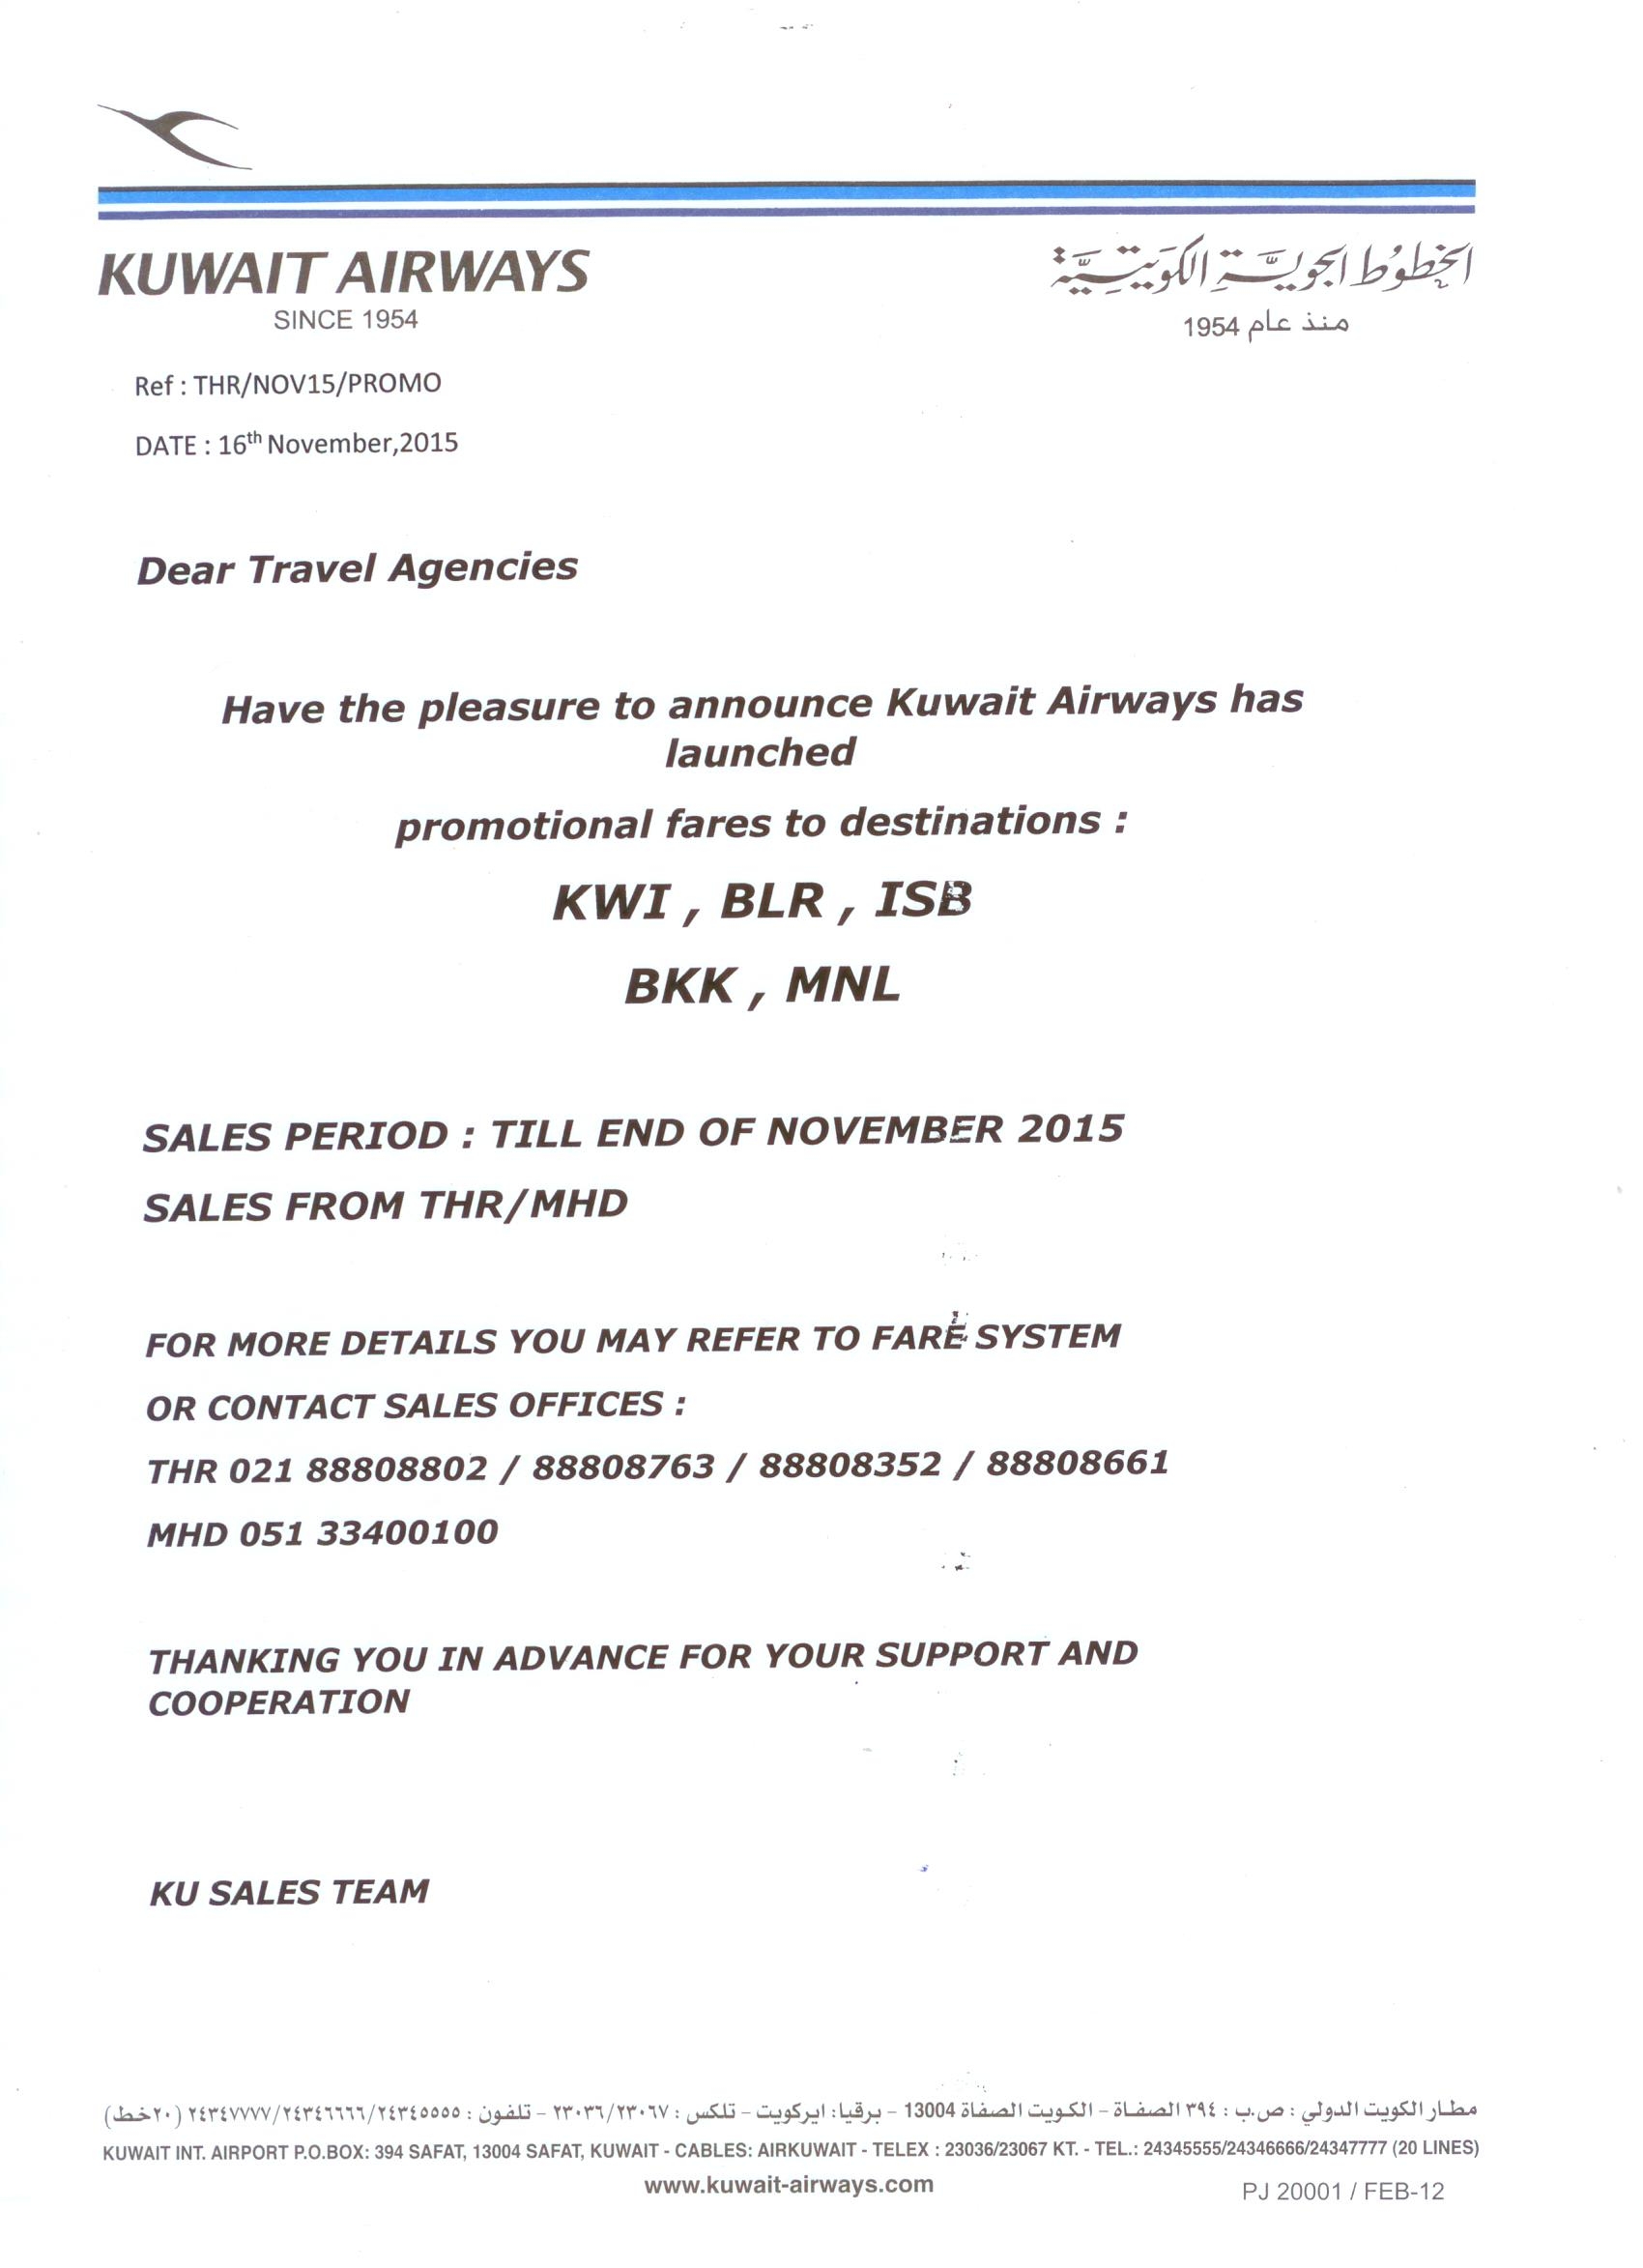 بخشنامه و اطلاعیه   هواپیمایی کویت درباره نرخ ویژه در مسیر کویت , بنگلور , اسلام آباد , بانکوک , مانیل